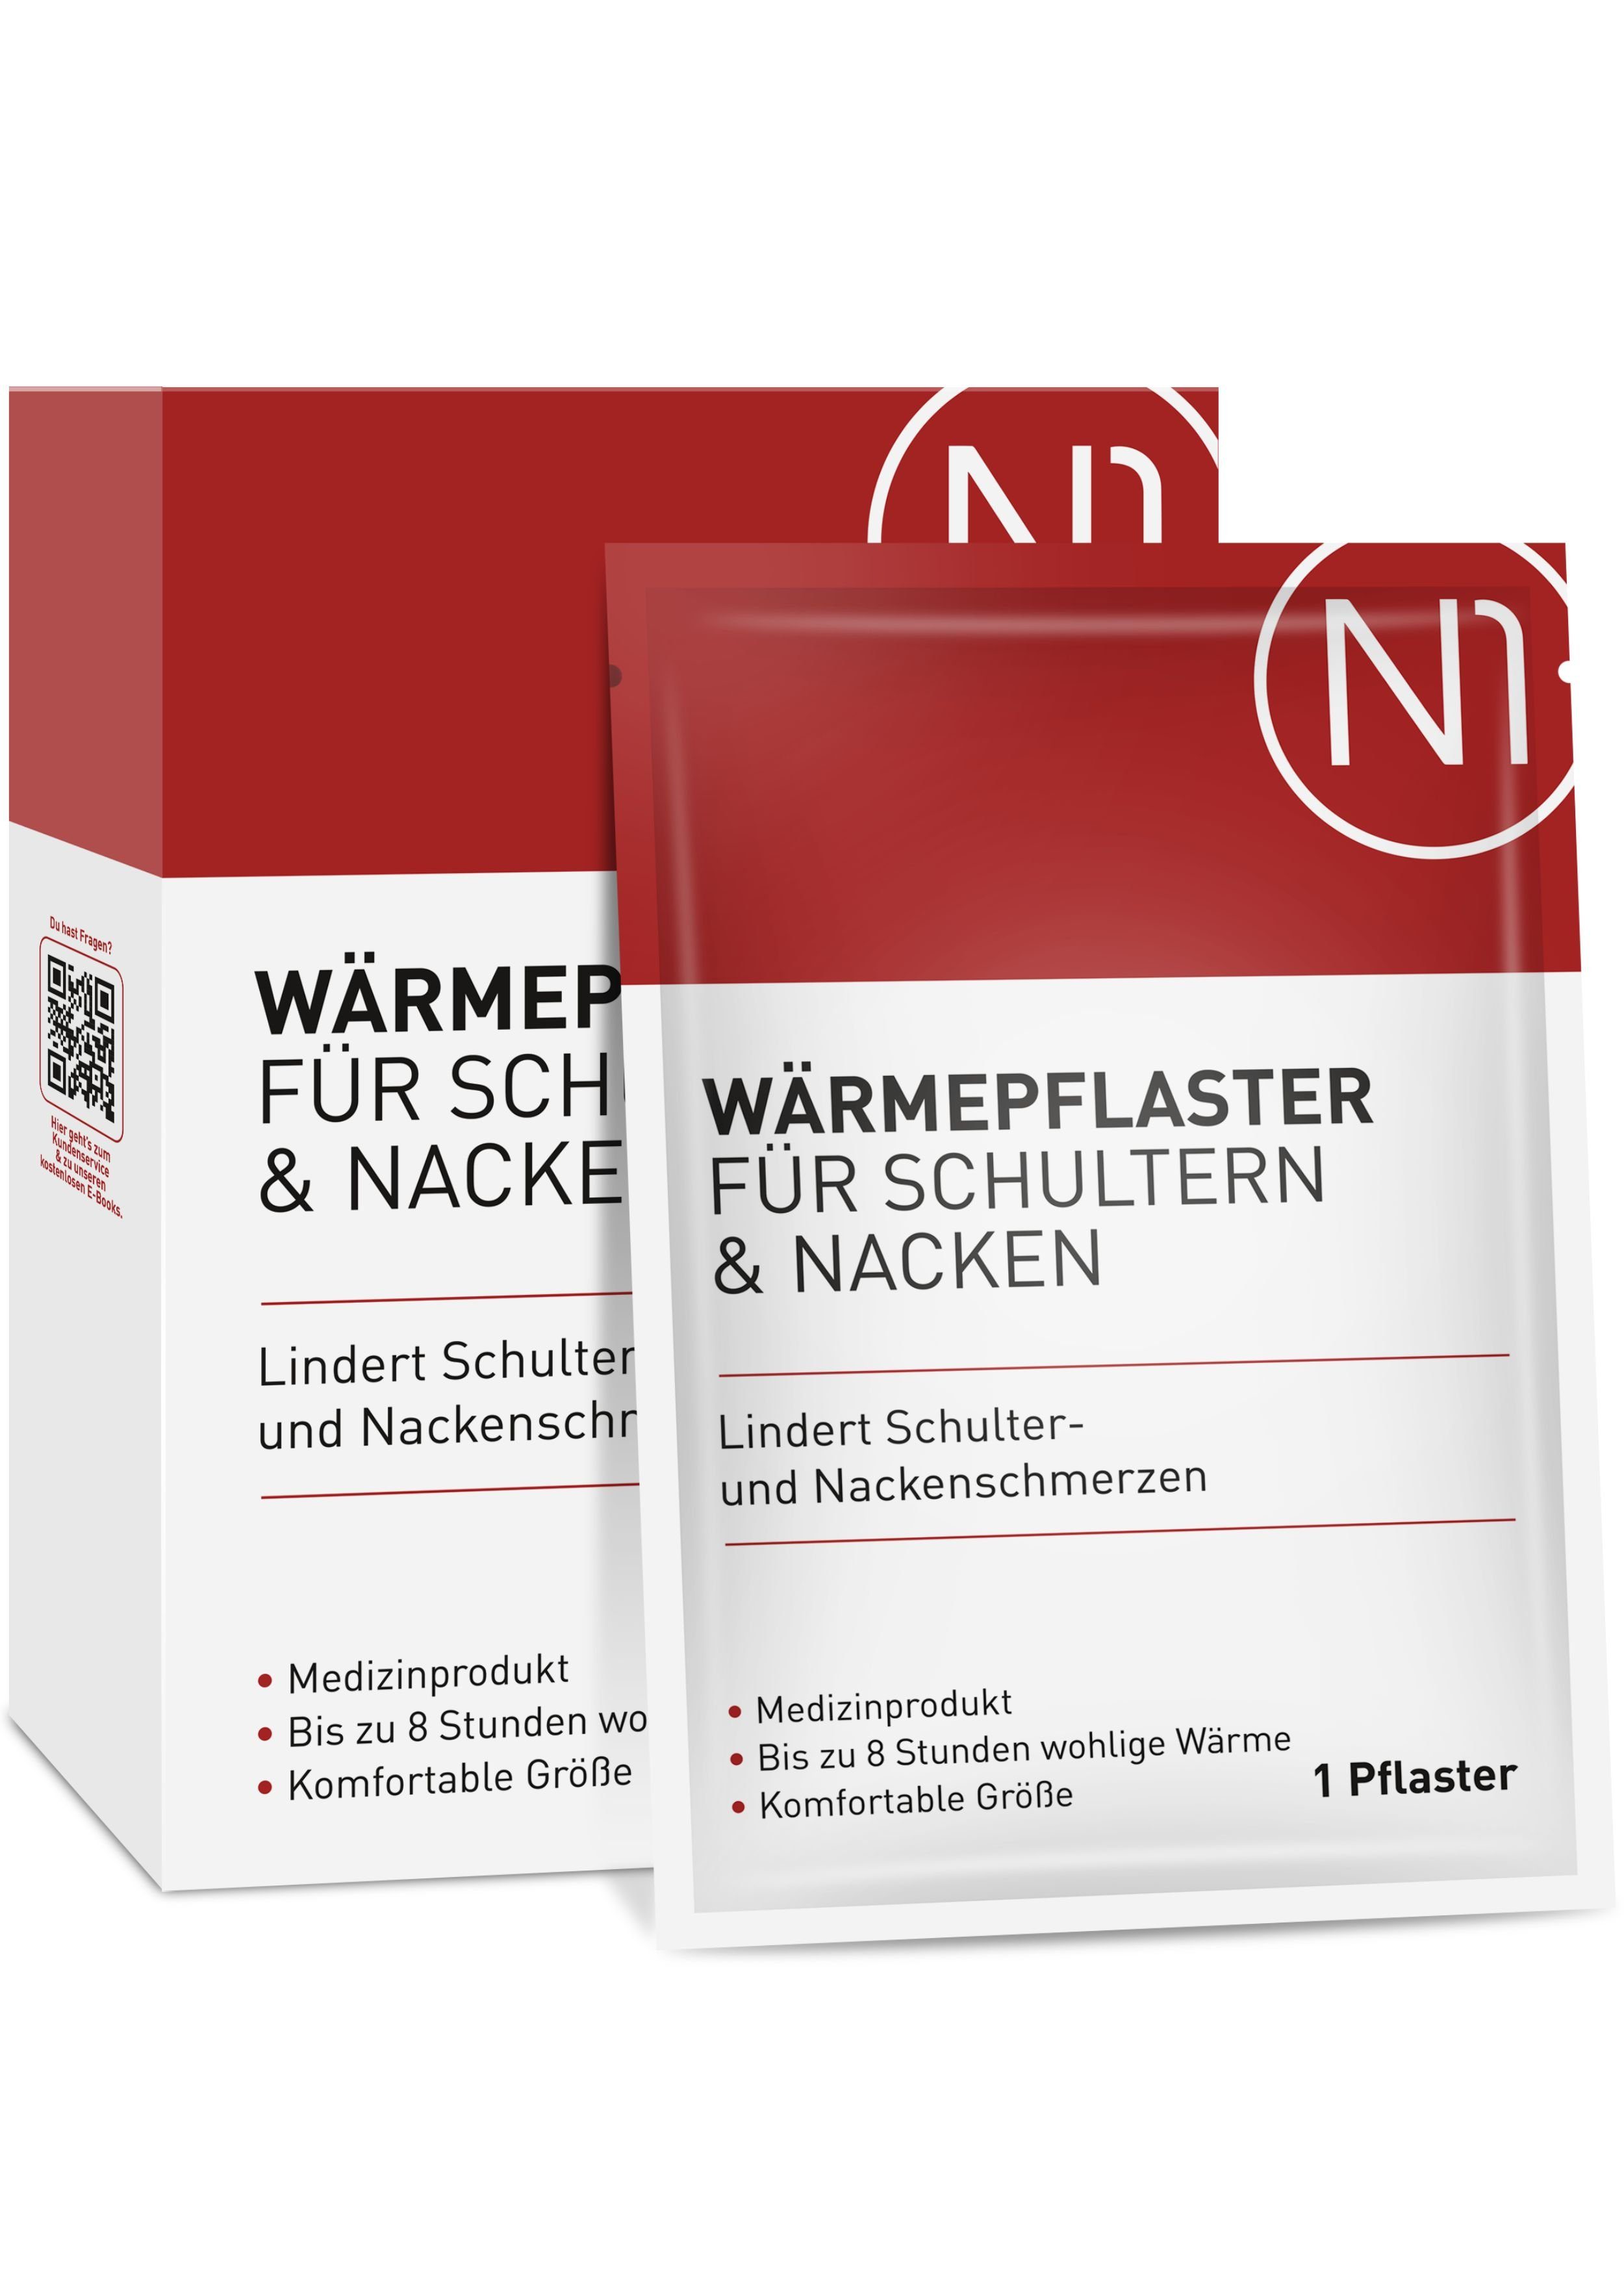 N1 Healthcare Wärmepflaster für Schulter & Nacken (4 St), 8 Stunden wohltuende Wärme